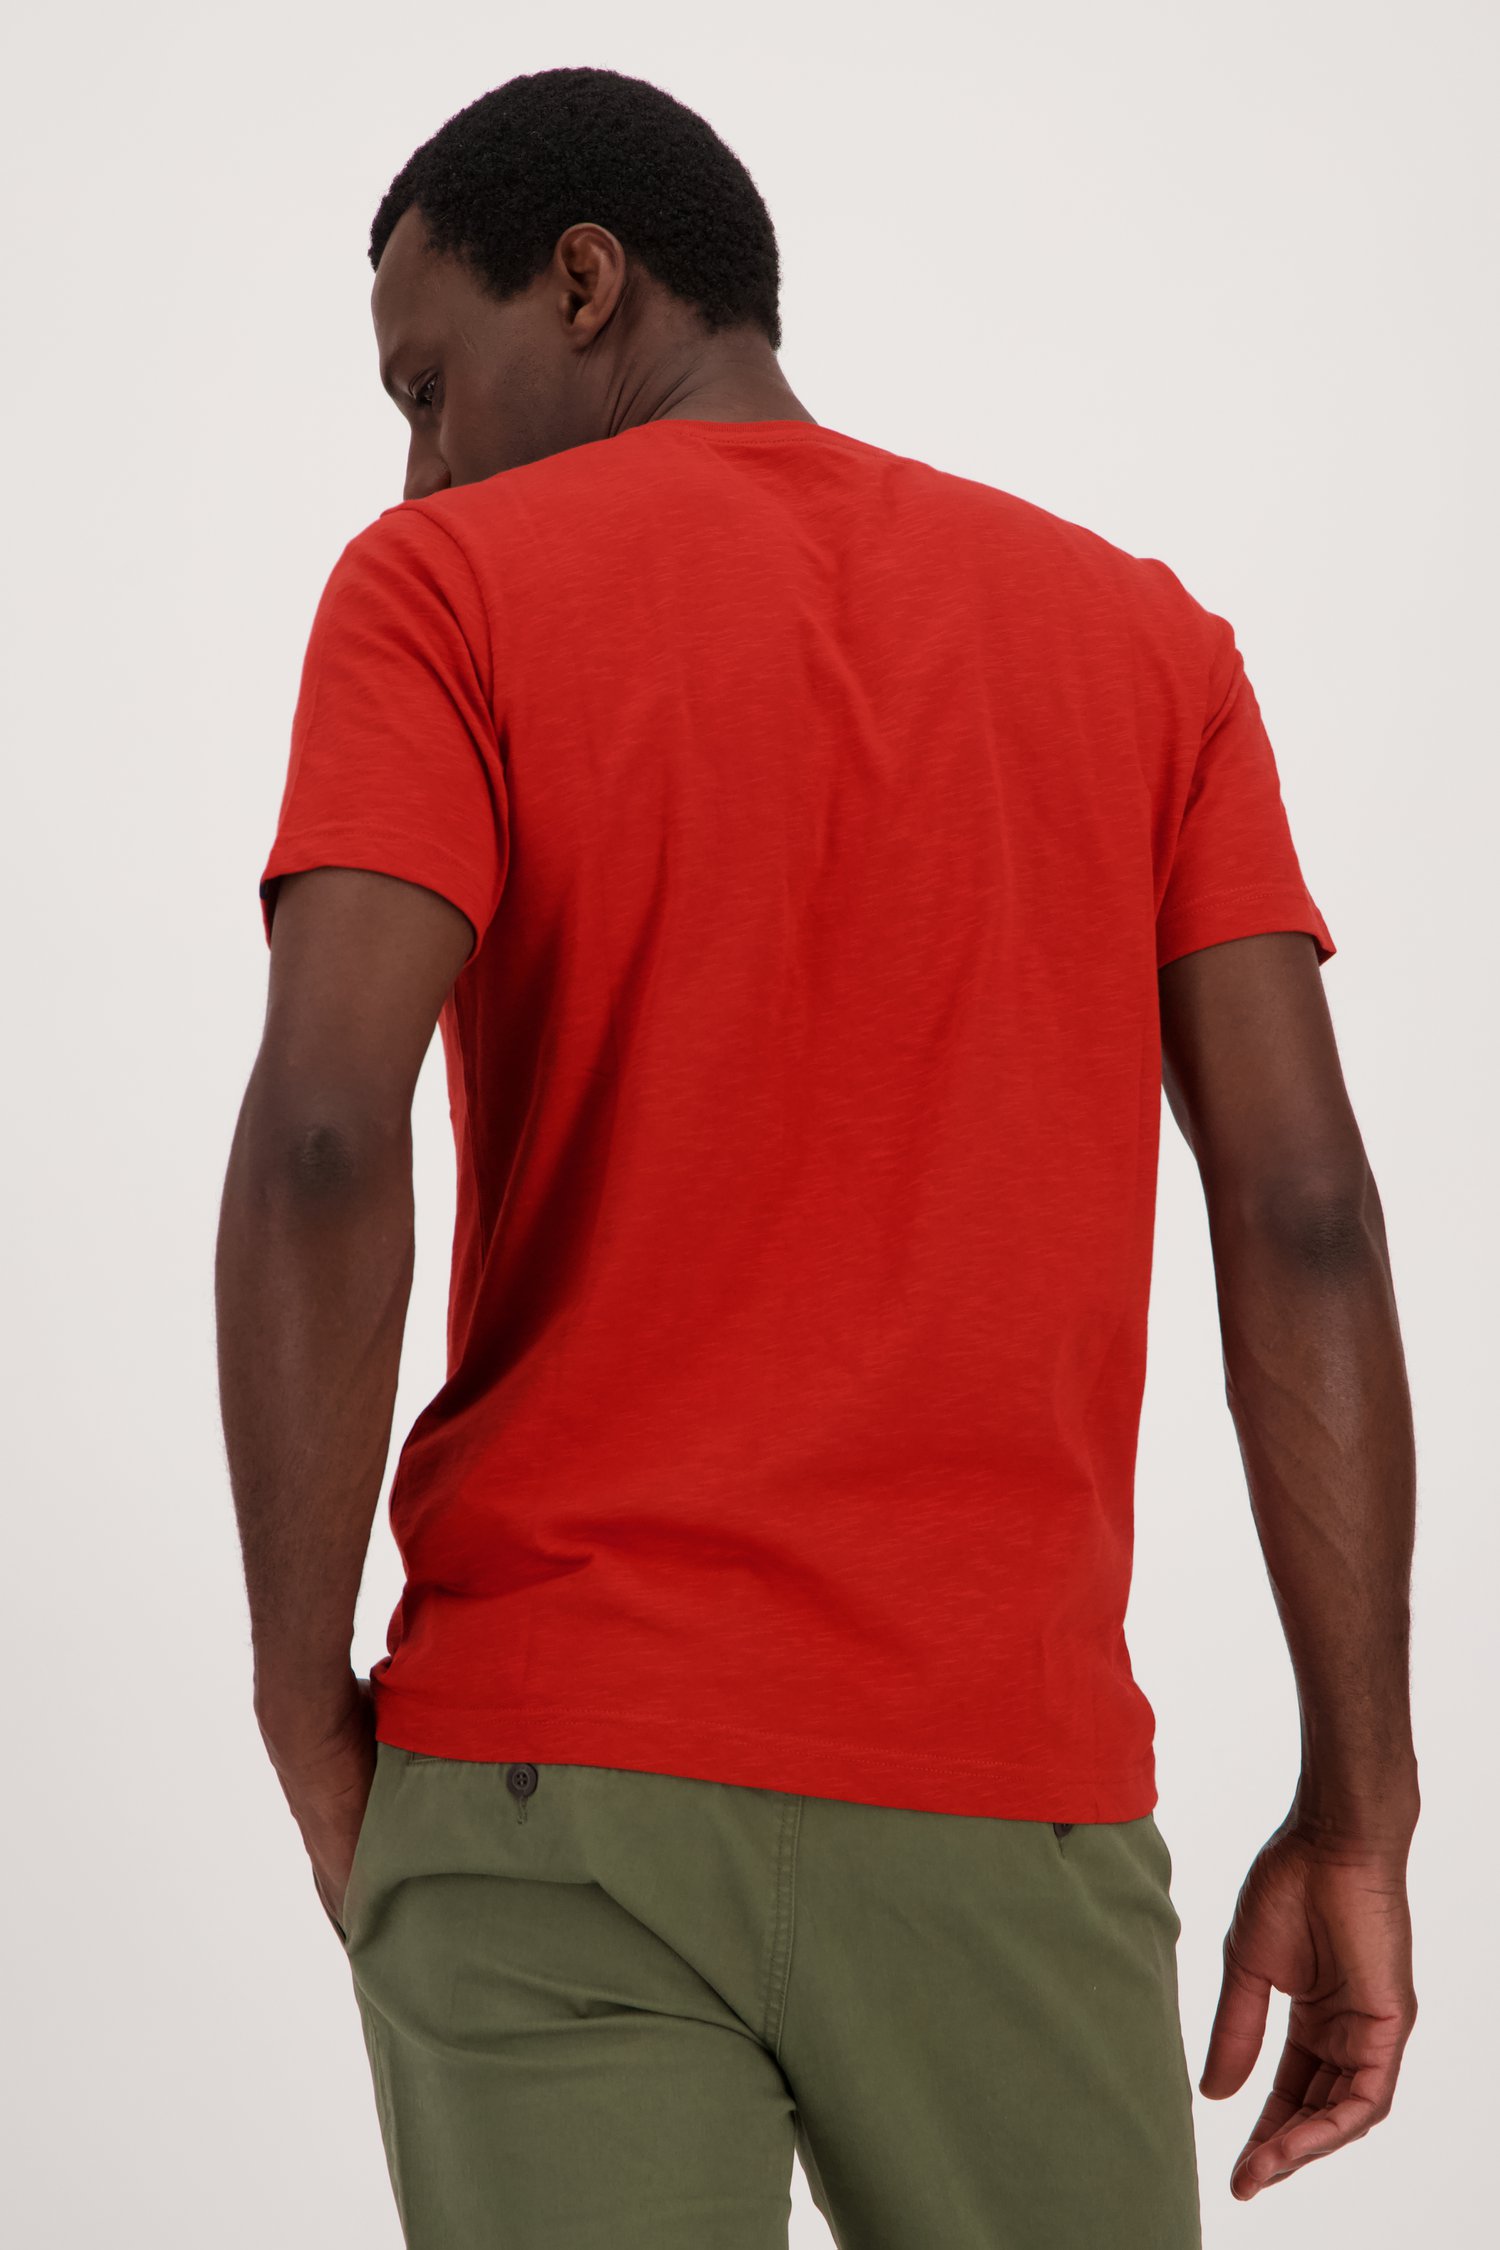 Rood T-shirt met ronde hals van Ravøtt voor Heren